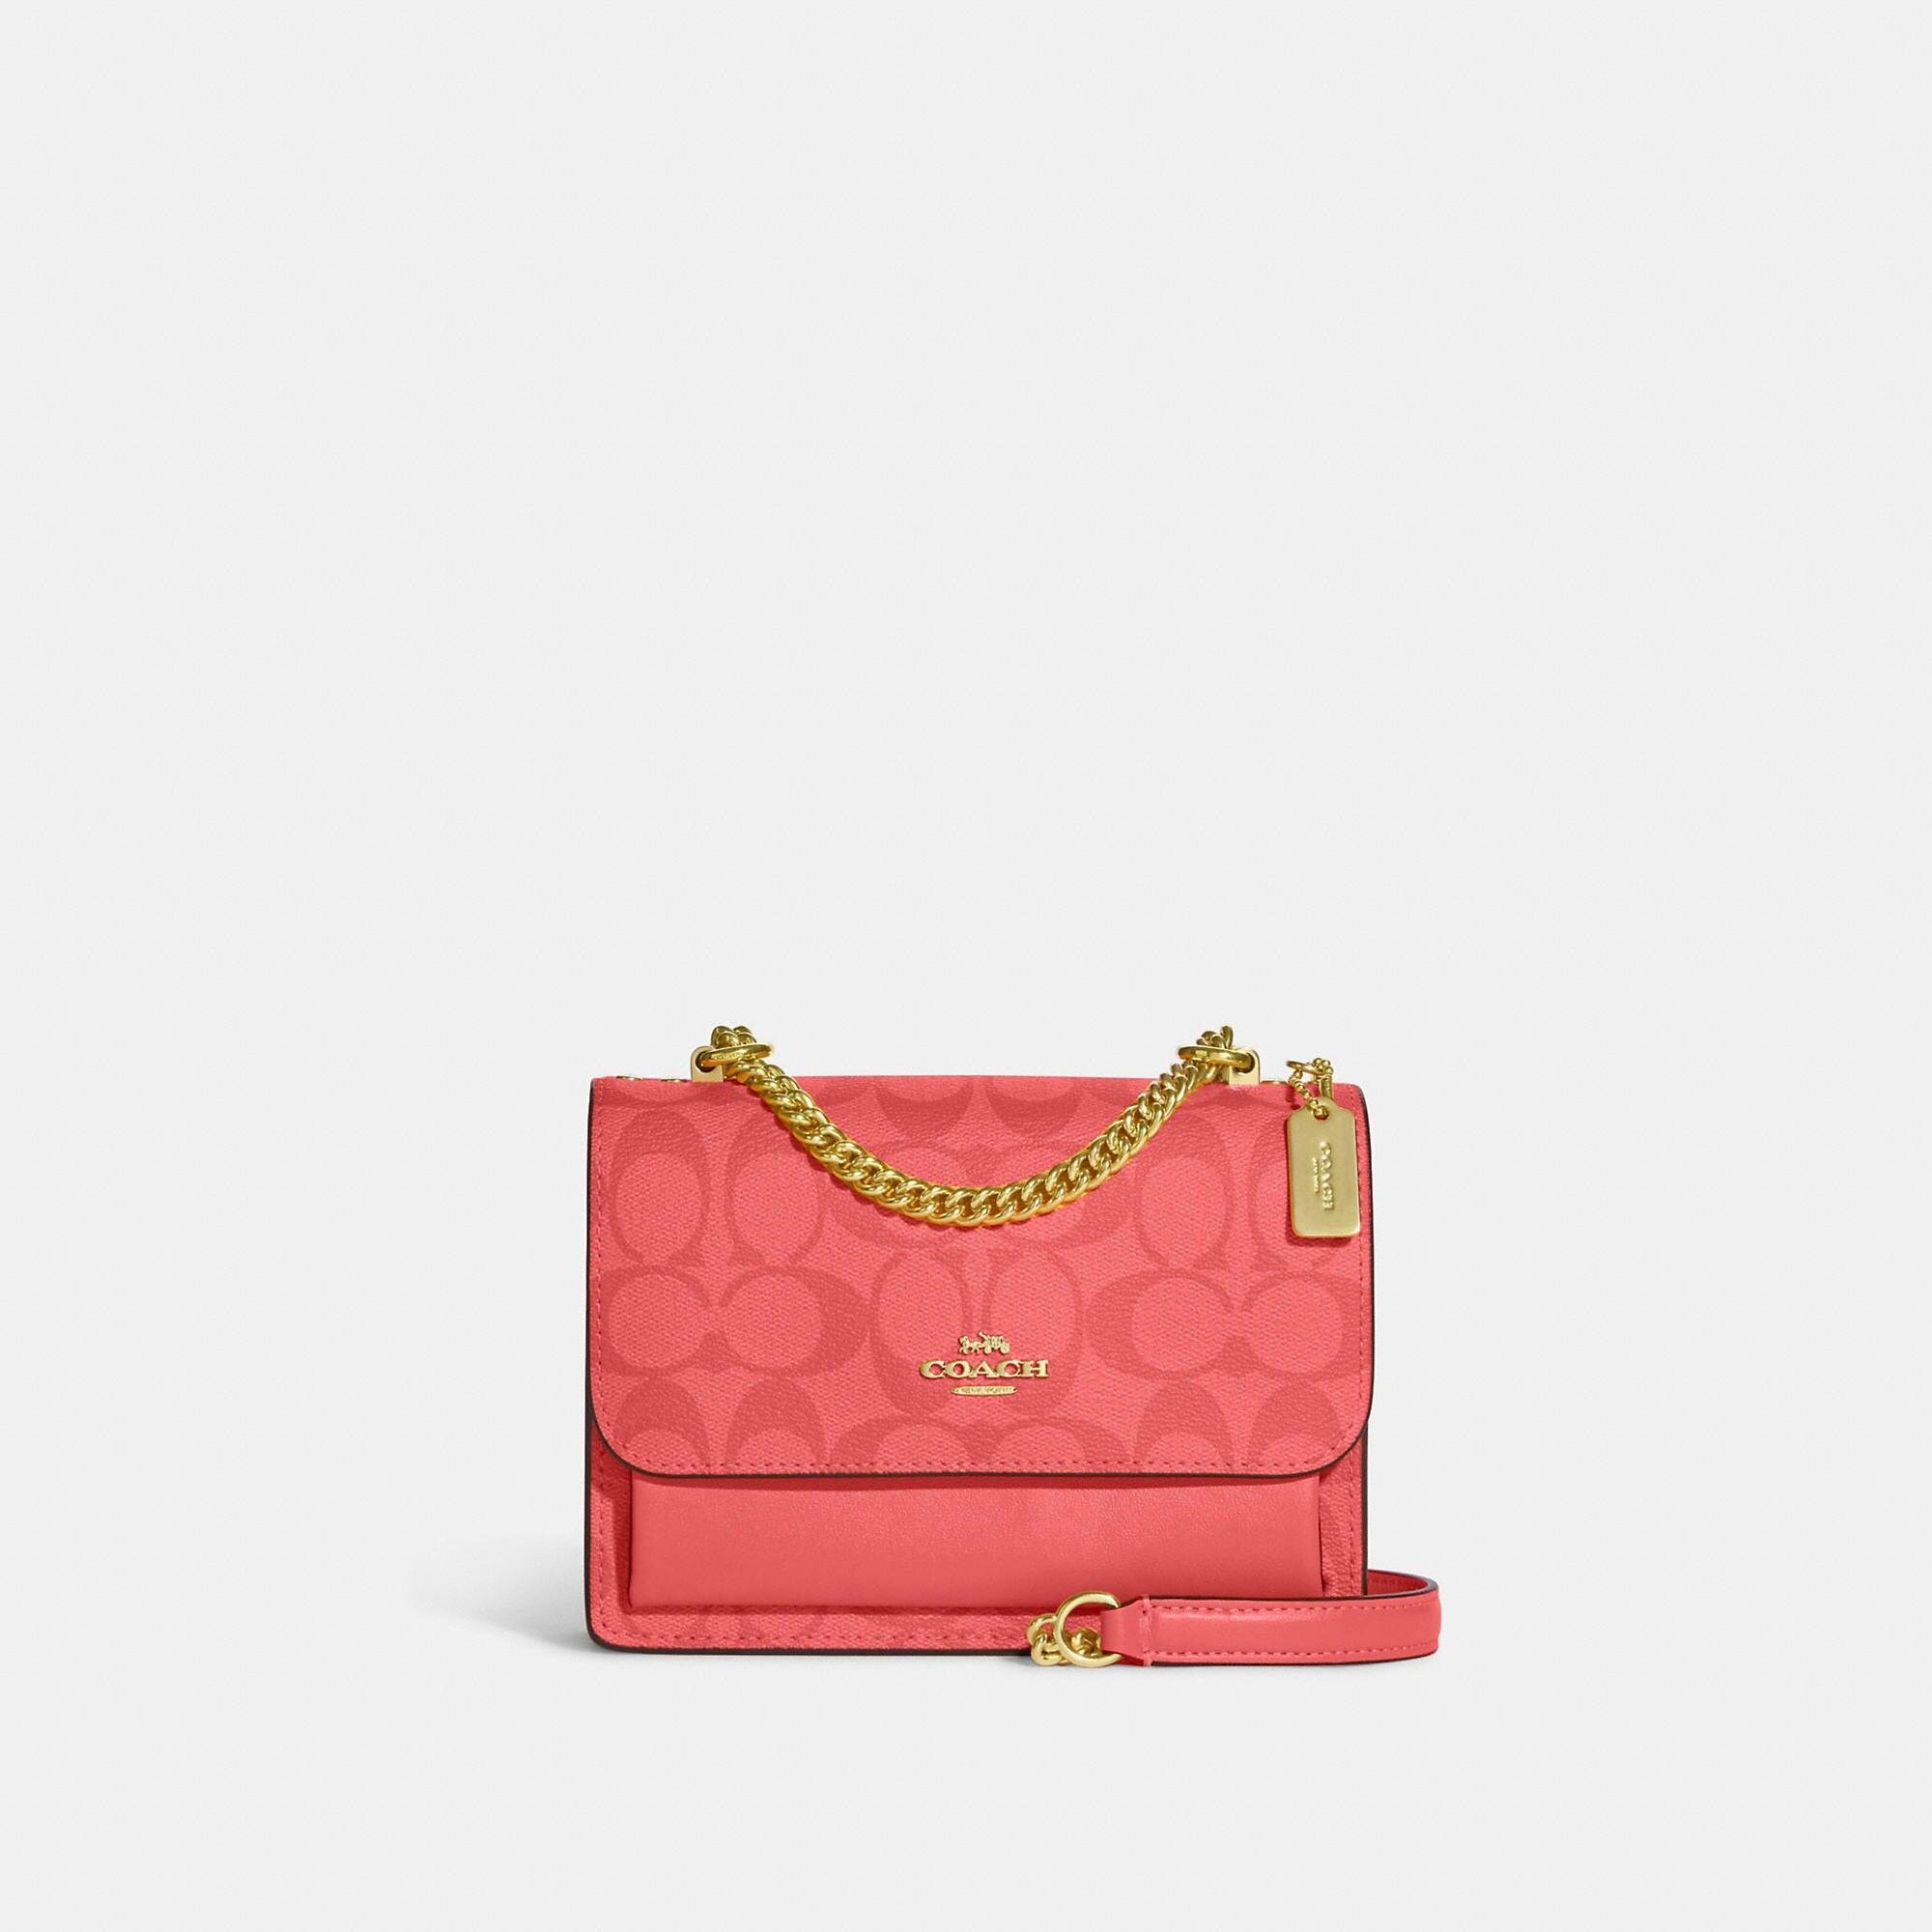 Coach Brown Signature Pink/lavender Suede Small Handbag - Etsy